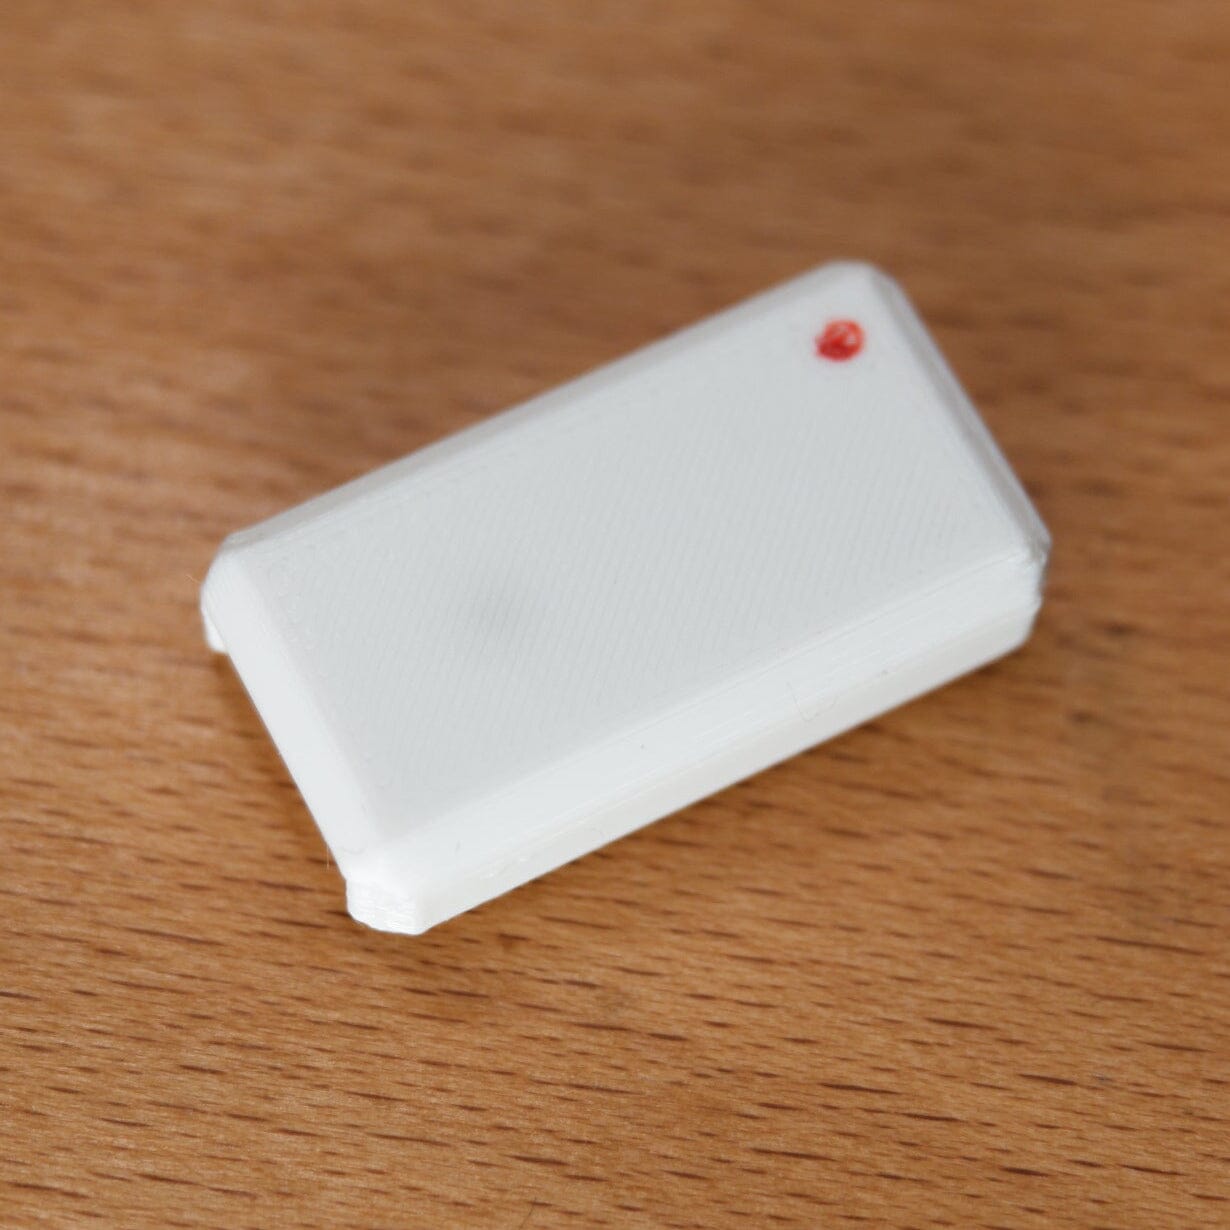 White USB Nova Case